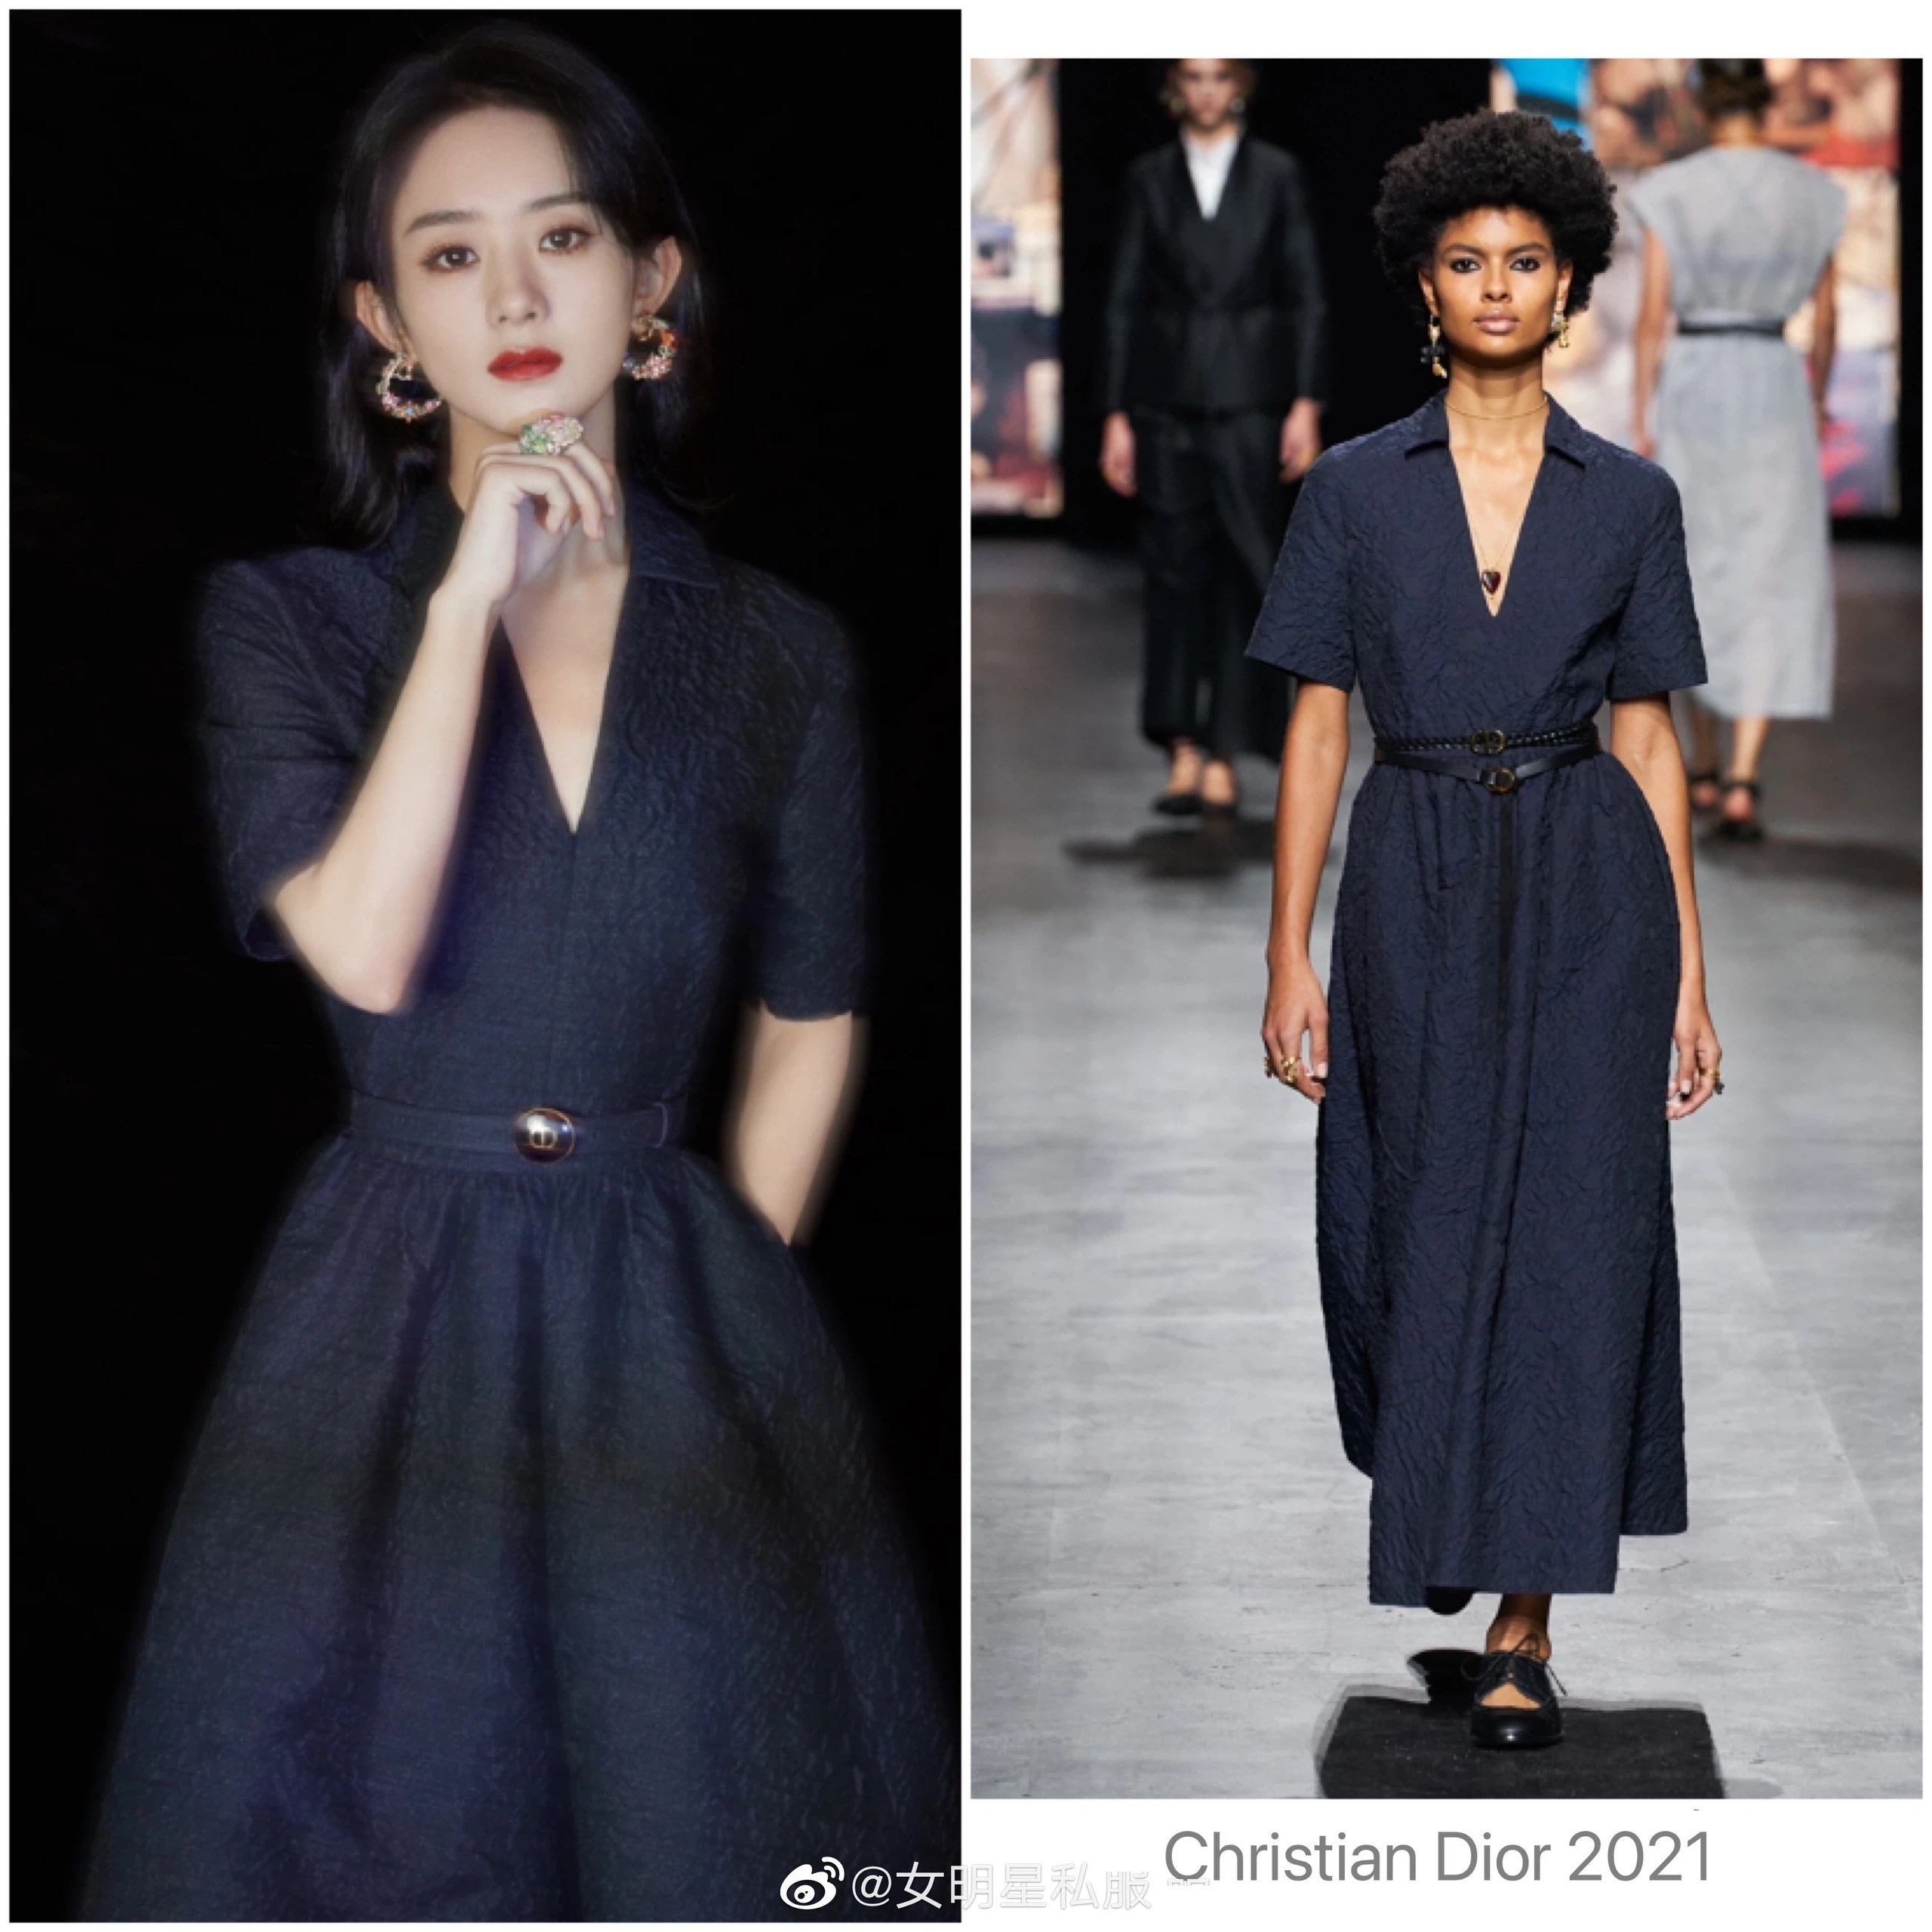 Đại sứ Dior Trung Quốc bị chê mặc đồ hiệu như đồ Quảng Châu